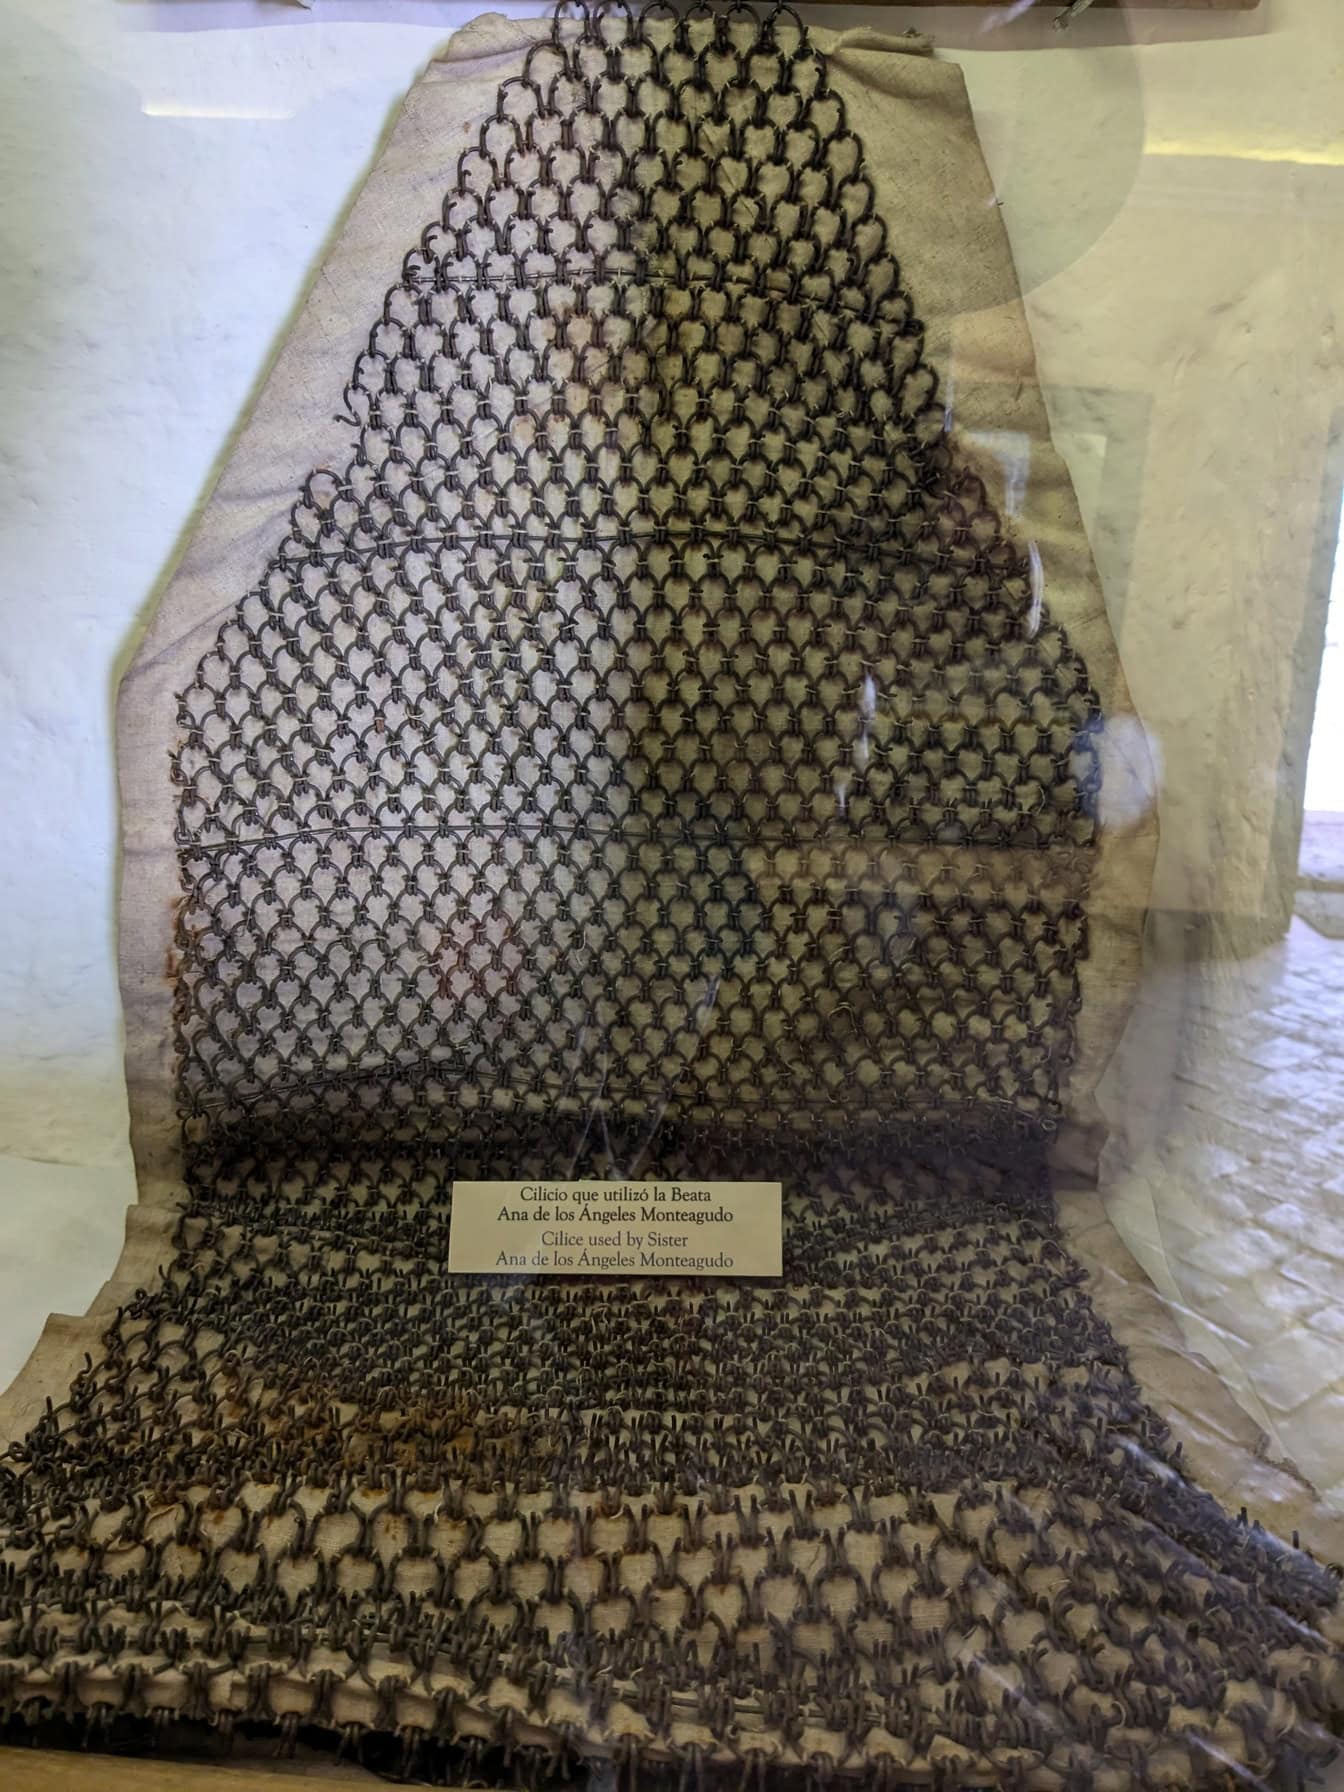 Ένα ένδυμα από αλυσίδες που χρησιμοποιήθηκε από την αδελφή Ana de los Angelos Monteagudo, εκτίθεται σε μουσείο στο Περού